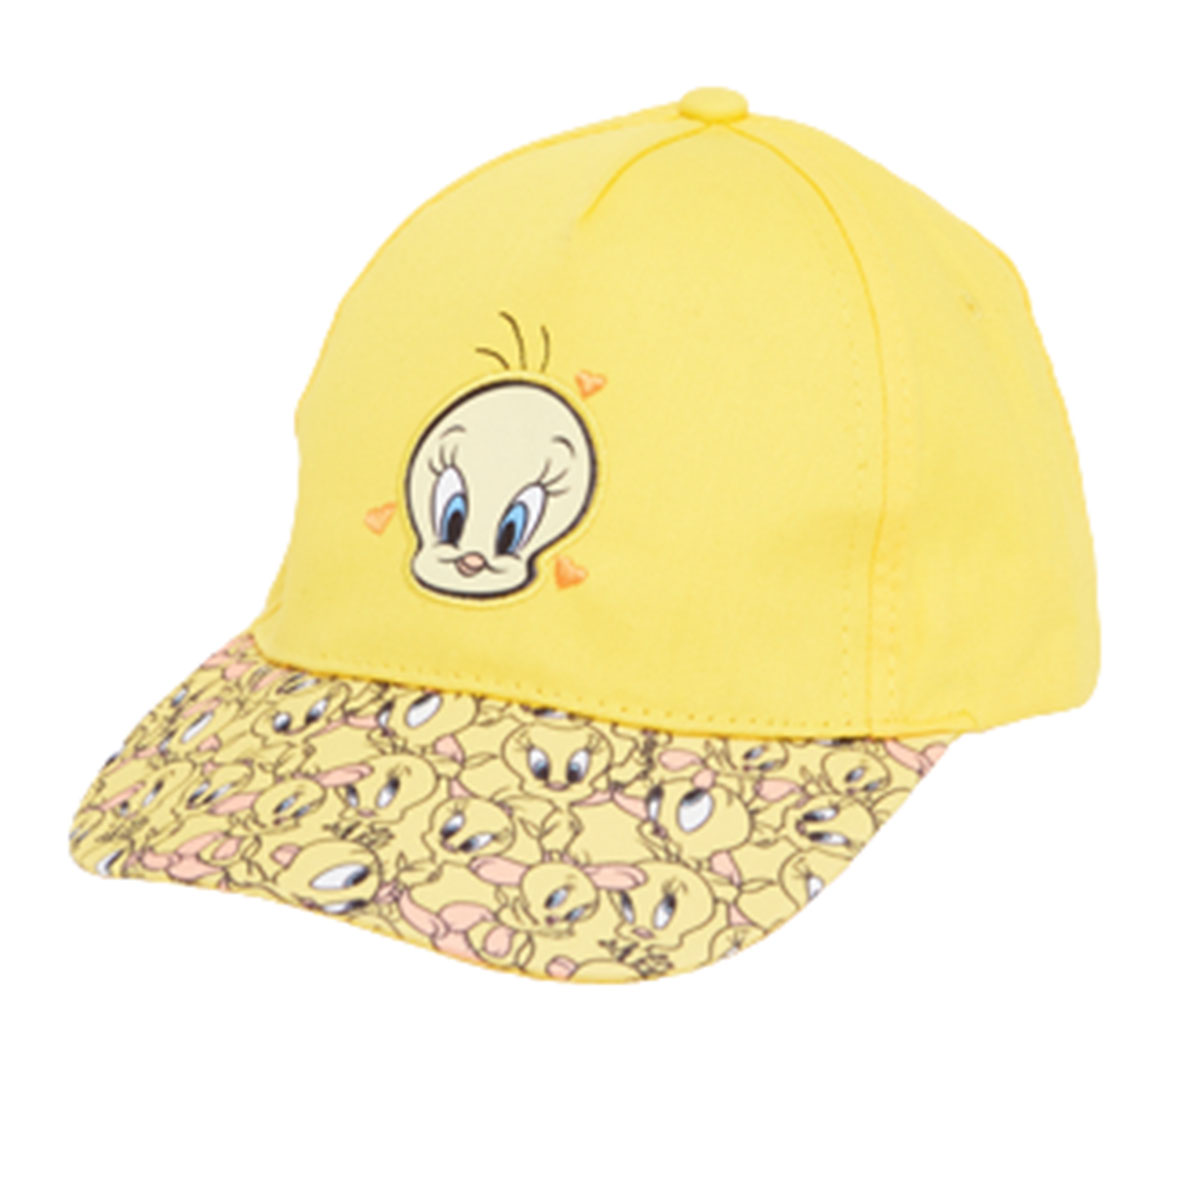 Titi Cap with visor